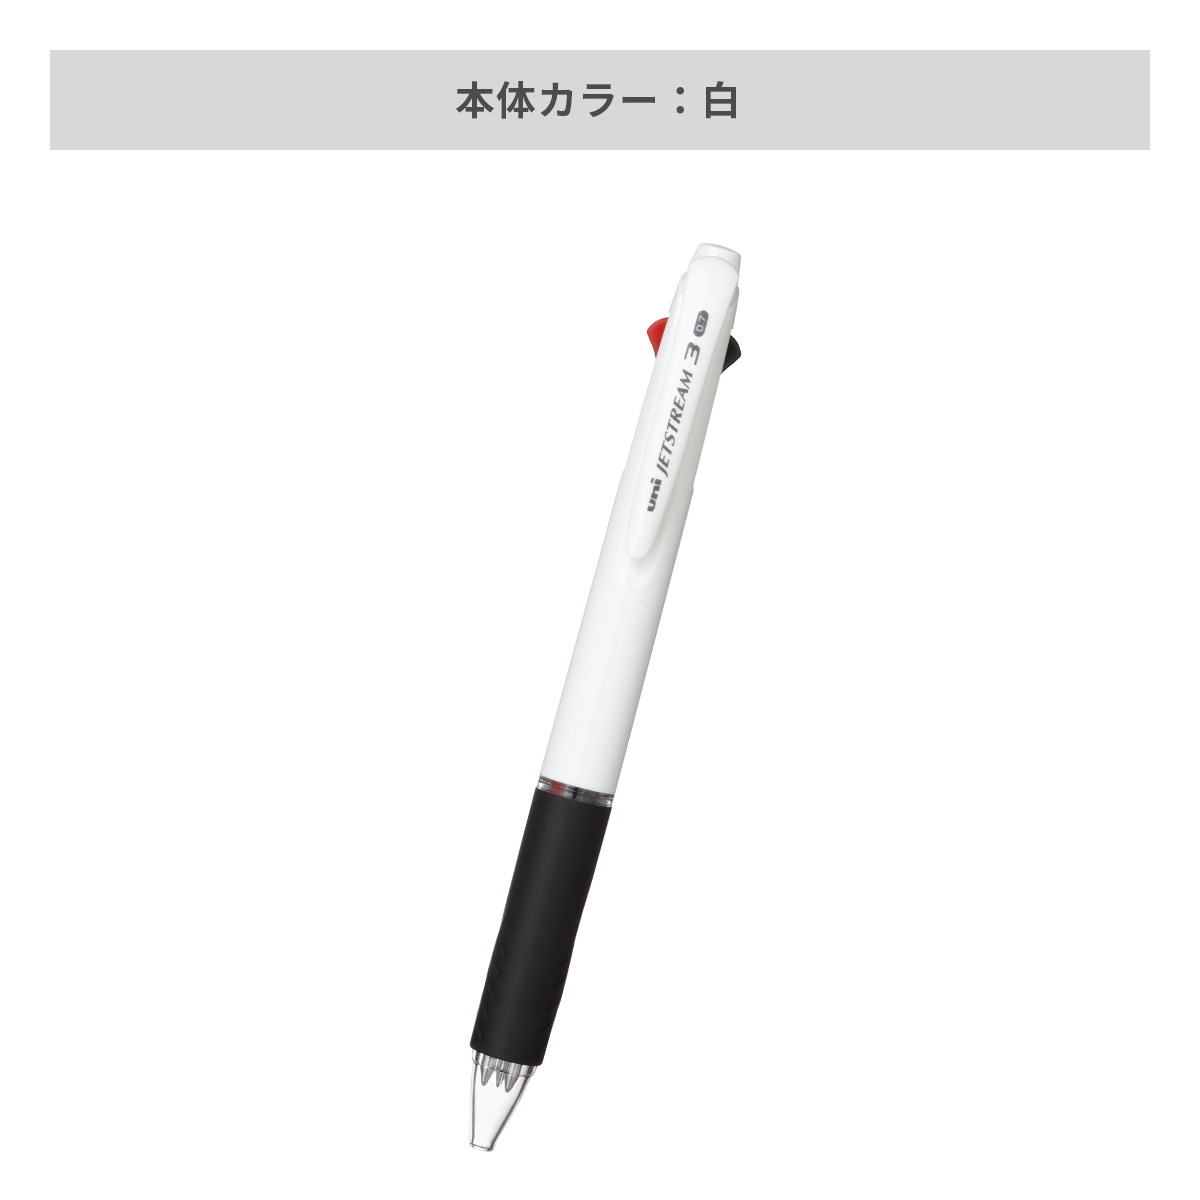 三菱鉛筆 ジェットストリーム 白軸 3色ボールペン 0.7mm【名入れボールペン / パッド印刷】 画像4